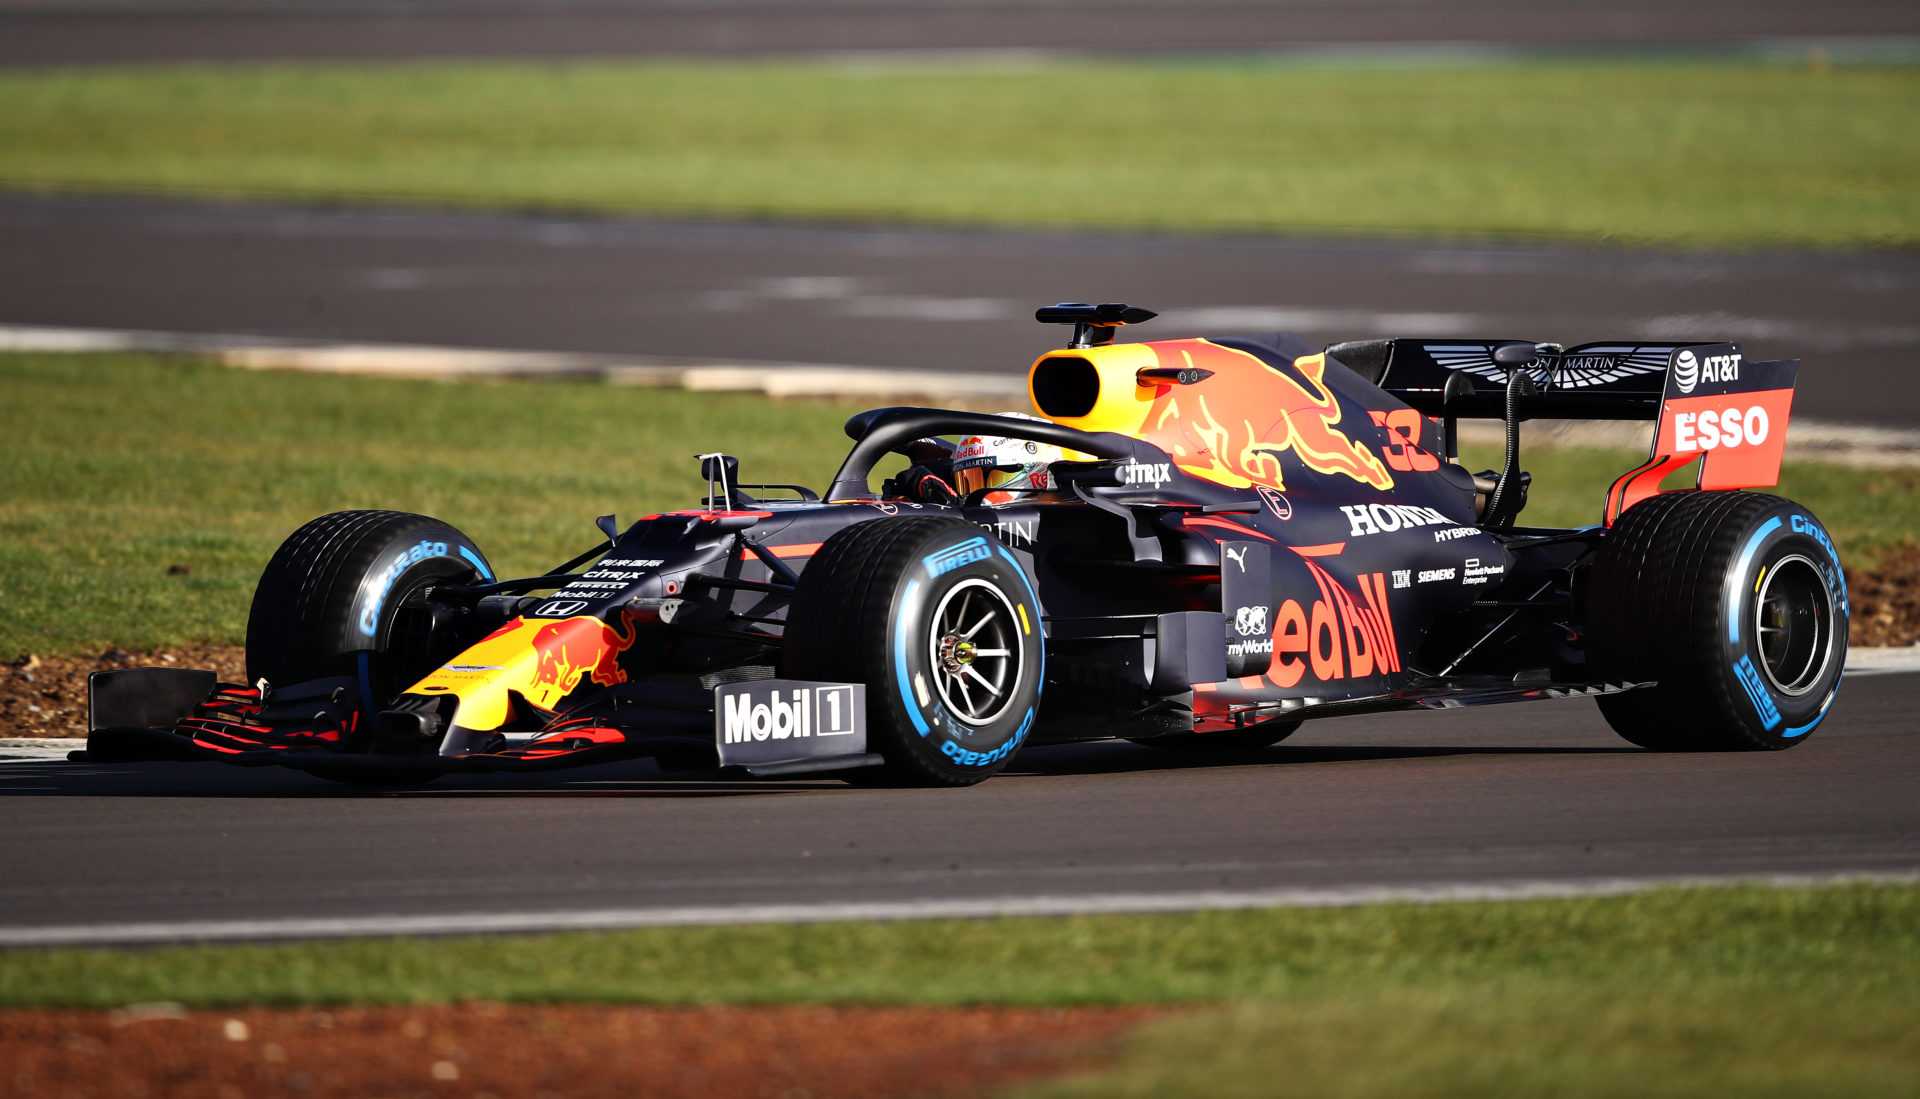 REGARDER: Dans les coulisses de la fascinante visite de l'usine Red Bull de Sergio Perez